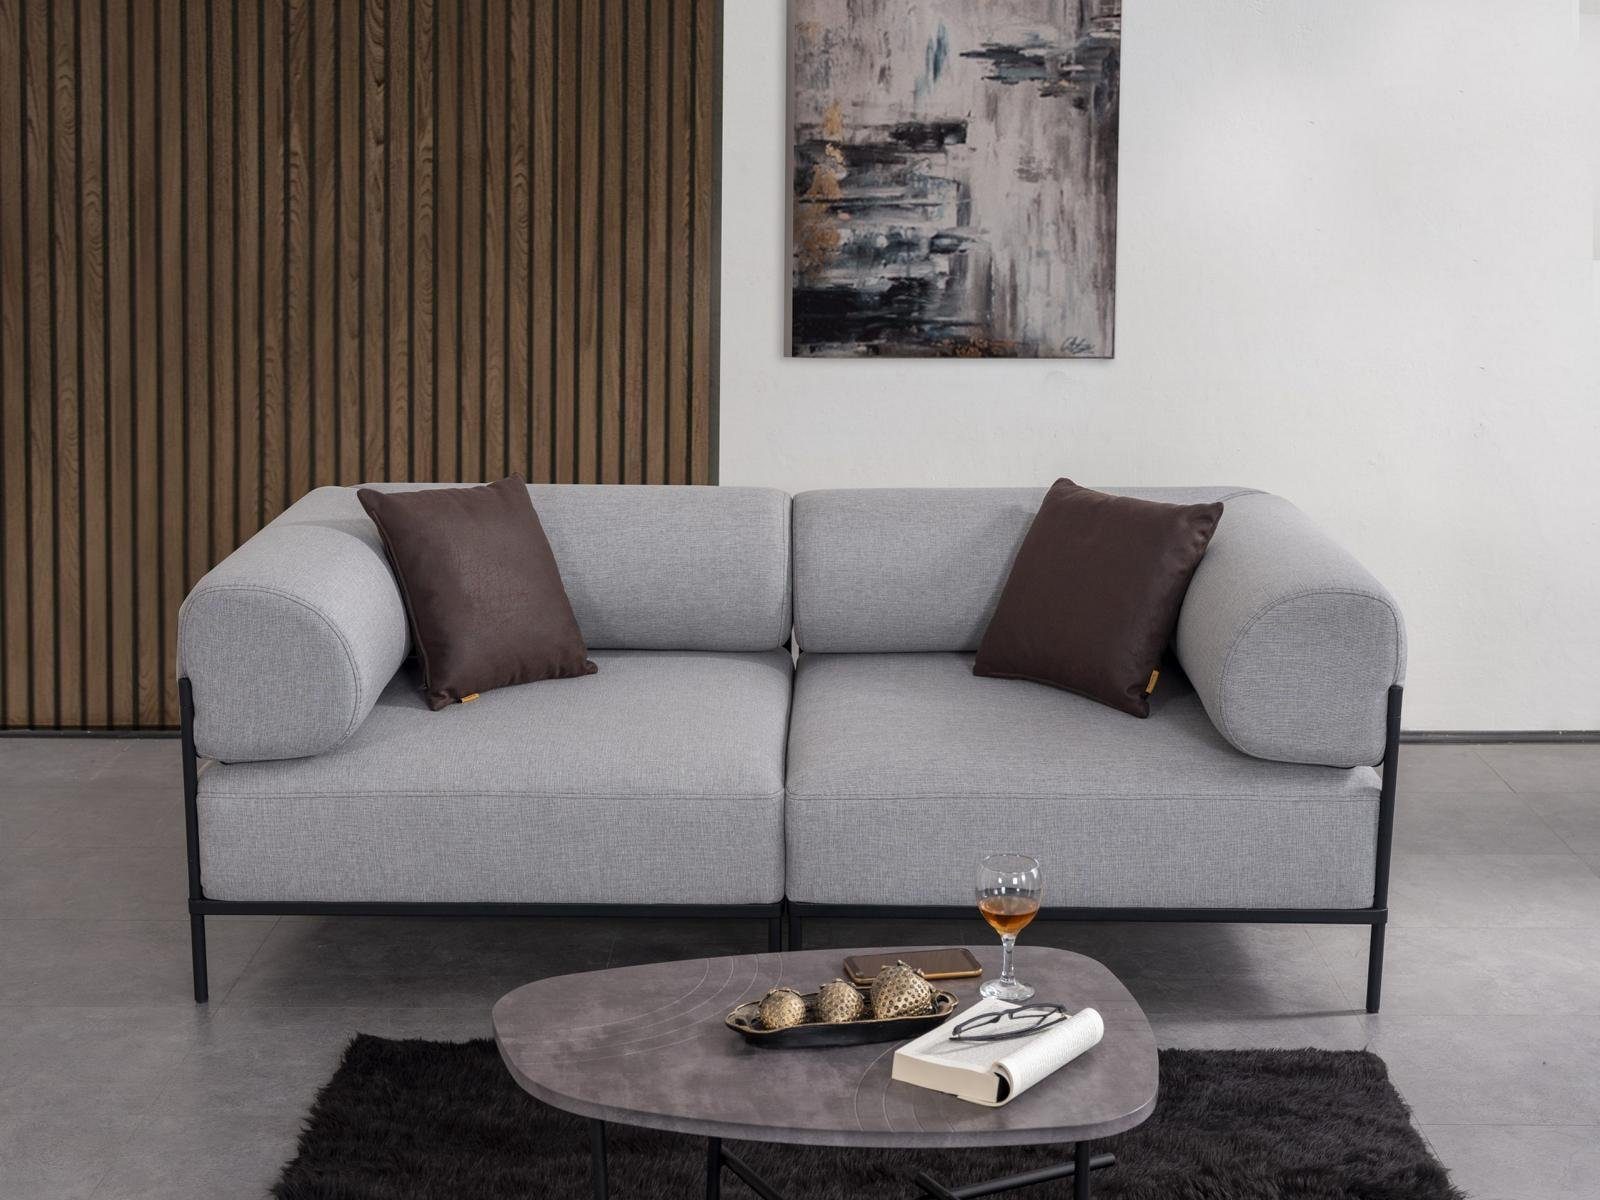 JVmoebel Sofa Sofa Zweisitzer Wohnzimmer Couch Polstermöbel Luxus Einrichtung, 1 Teile, Made in Europa